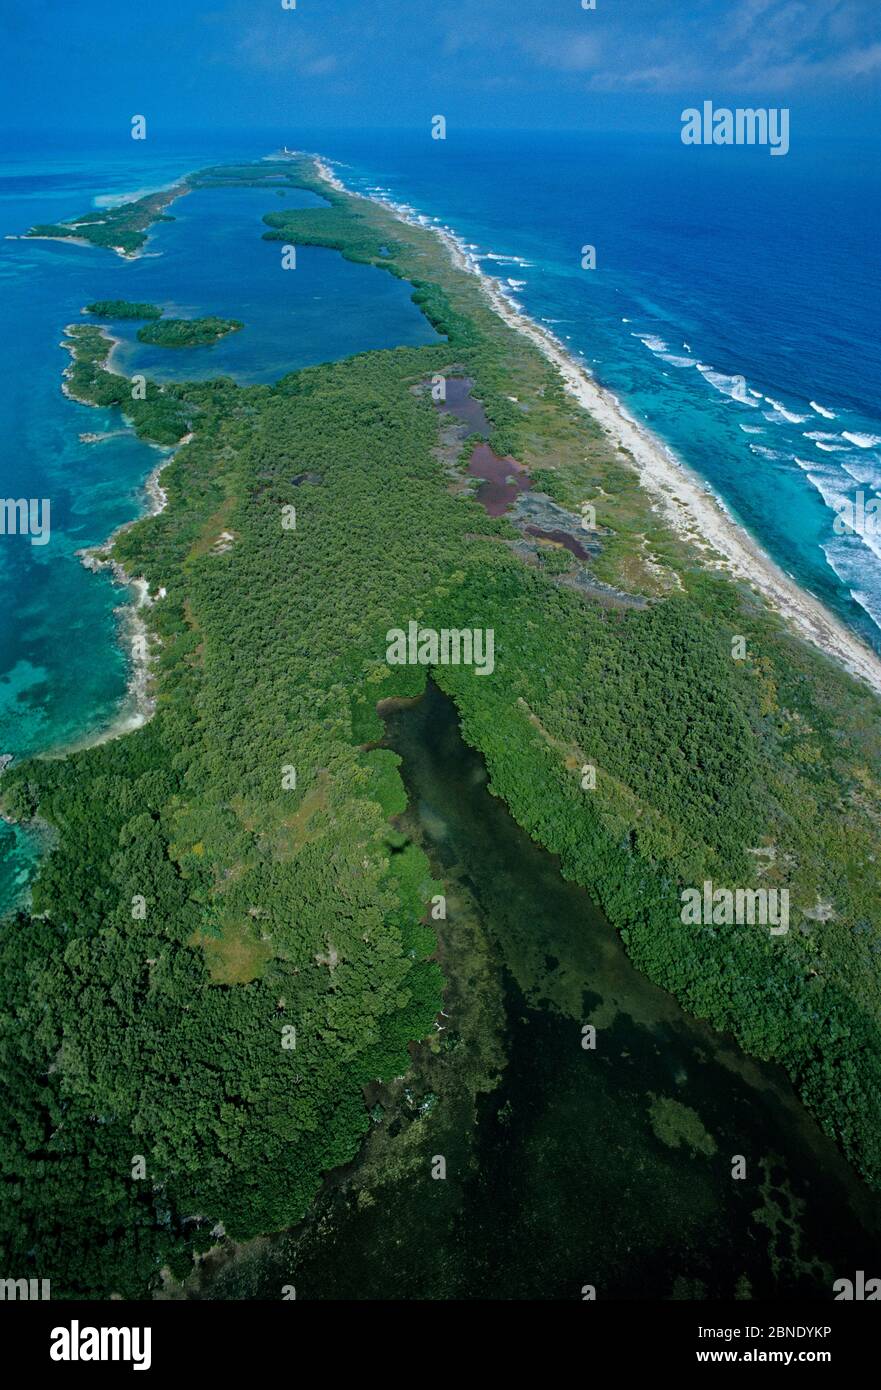 Vista aerea della foresta di mangrovie rosse (rizophora mangle), del Parco Nazionale dell'Isola Contoy, del sistema Mesoamericano Reef, vicino a Cancun, Mar dei Caraibi, Messico, Jan Foto Stock